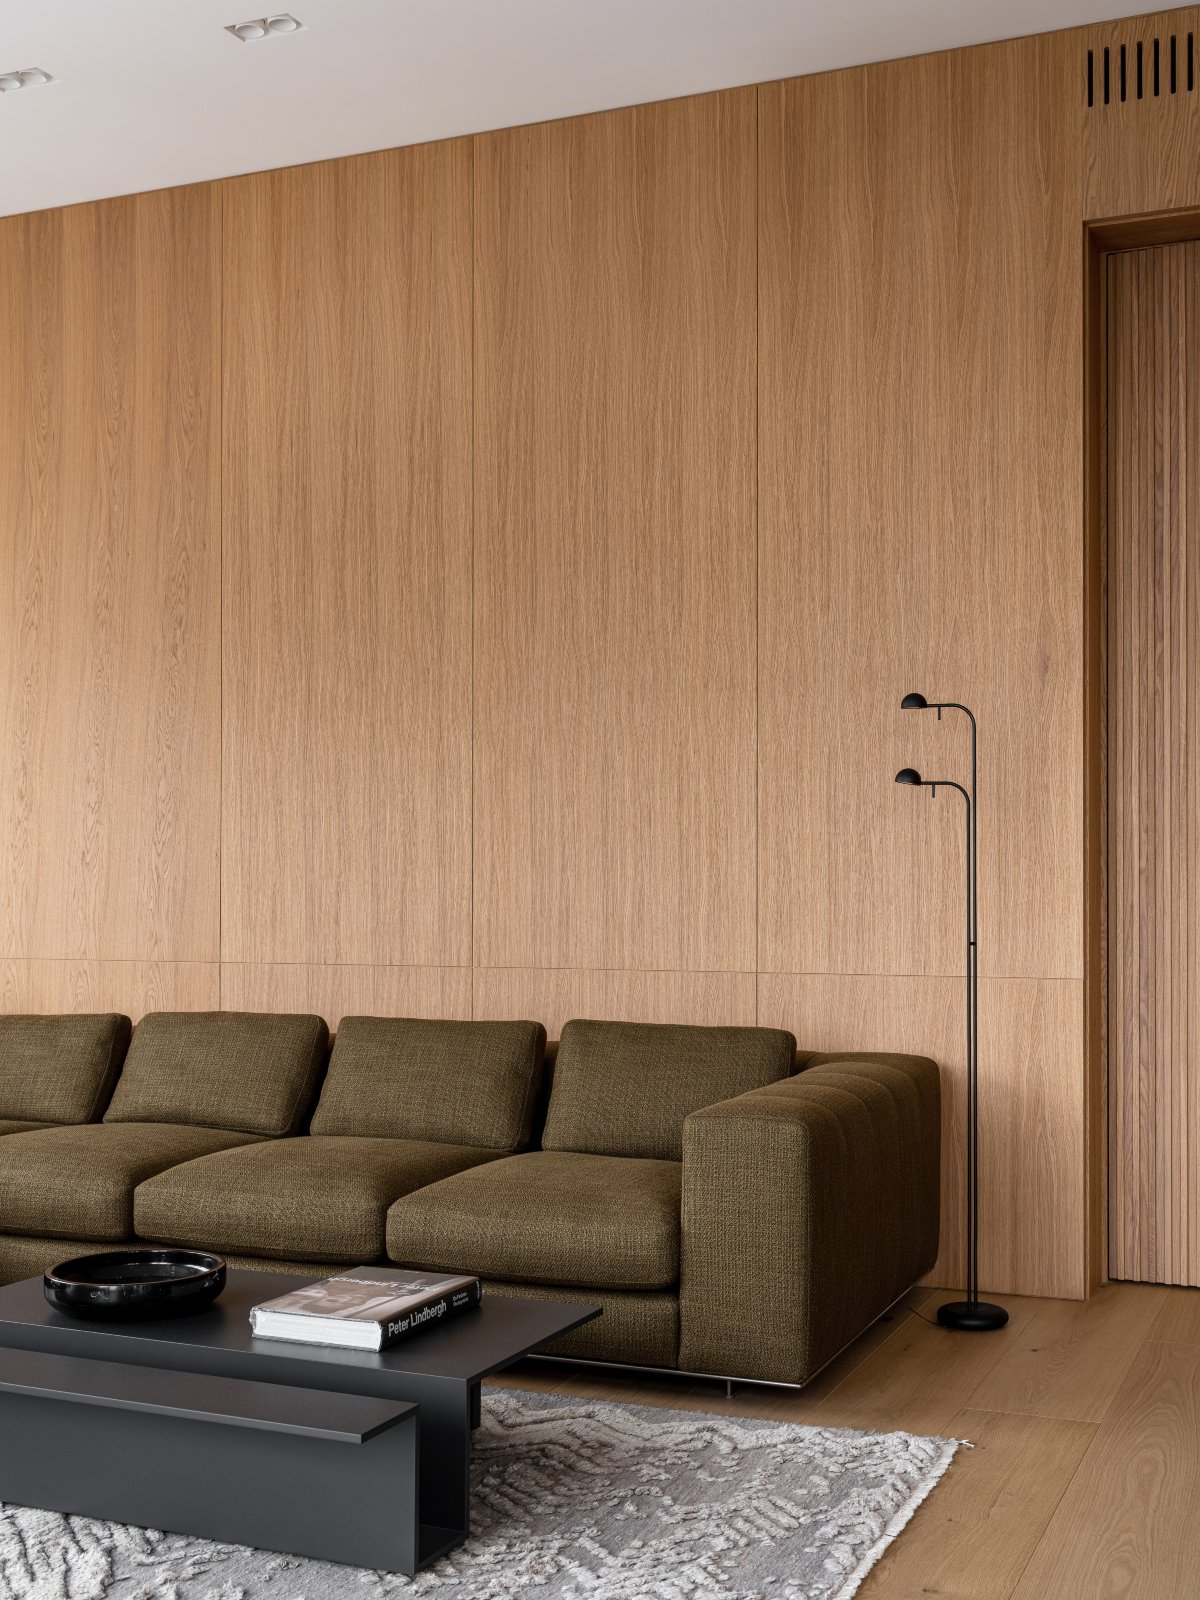 Salón panelado en madera y sofá marrón verdoso